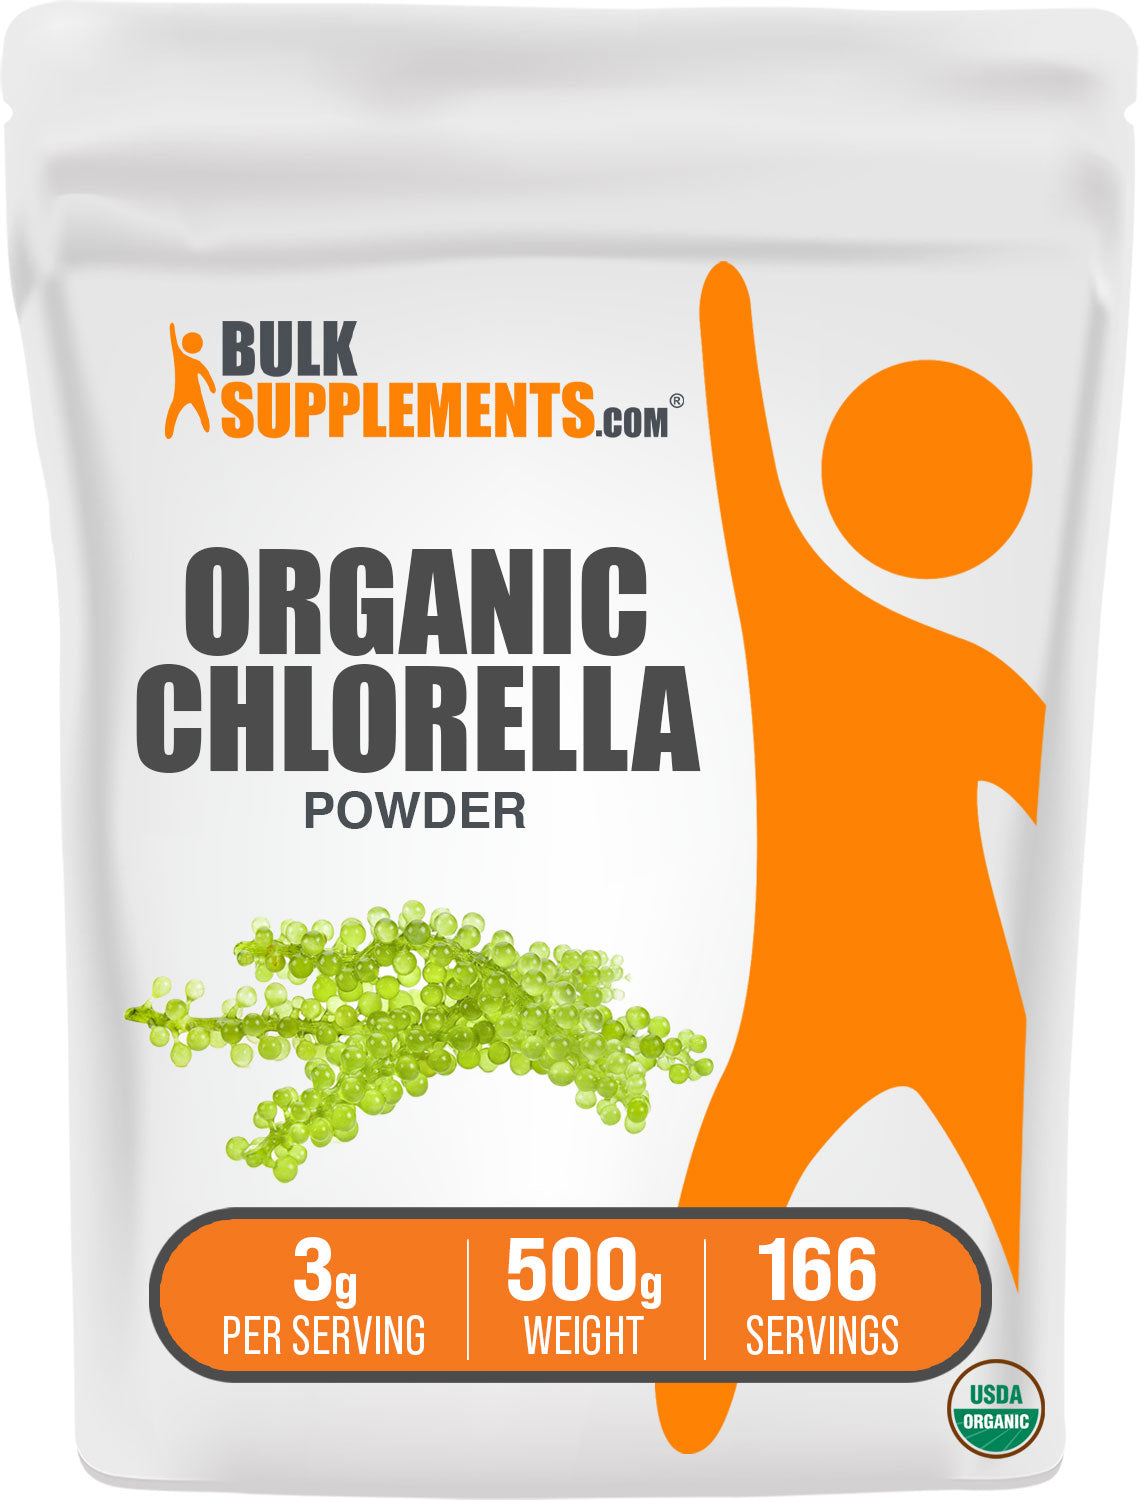 500g of chlorella powder organic